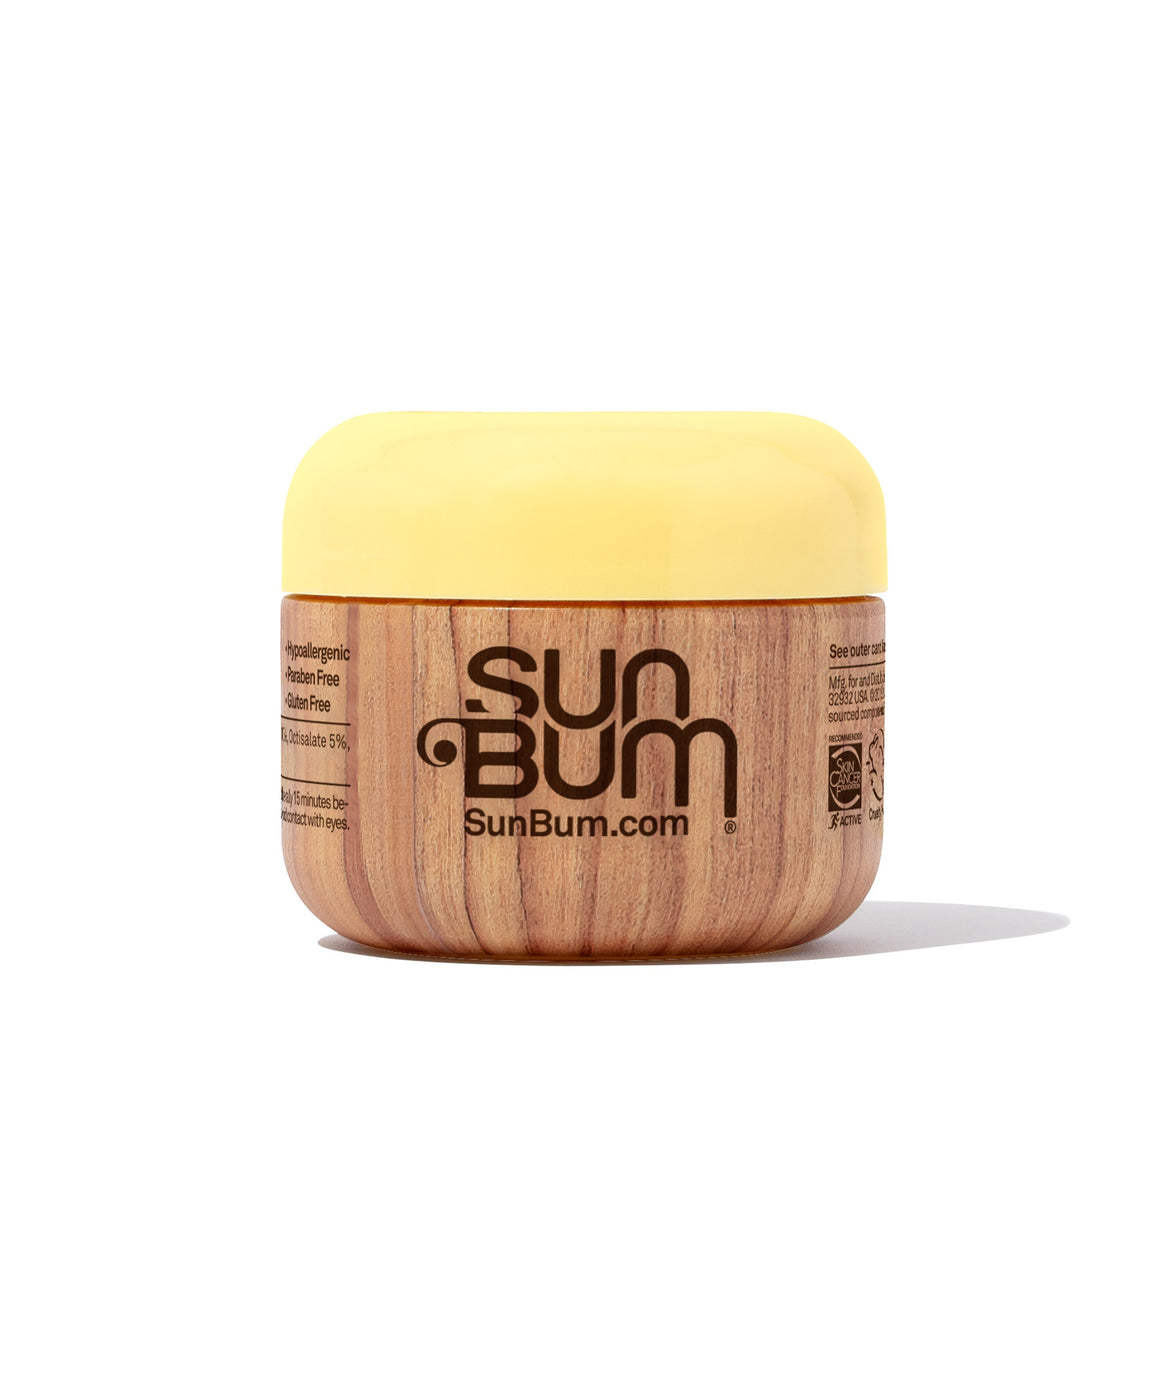 Sun Bum Unisex Clear Zinc Sunscreen